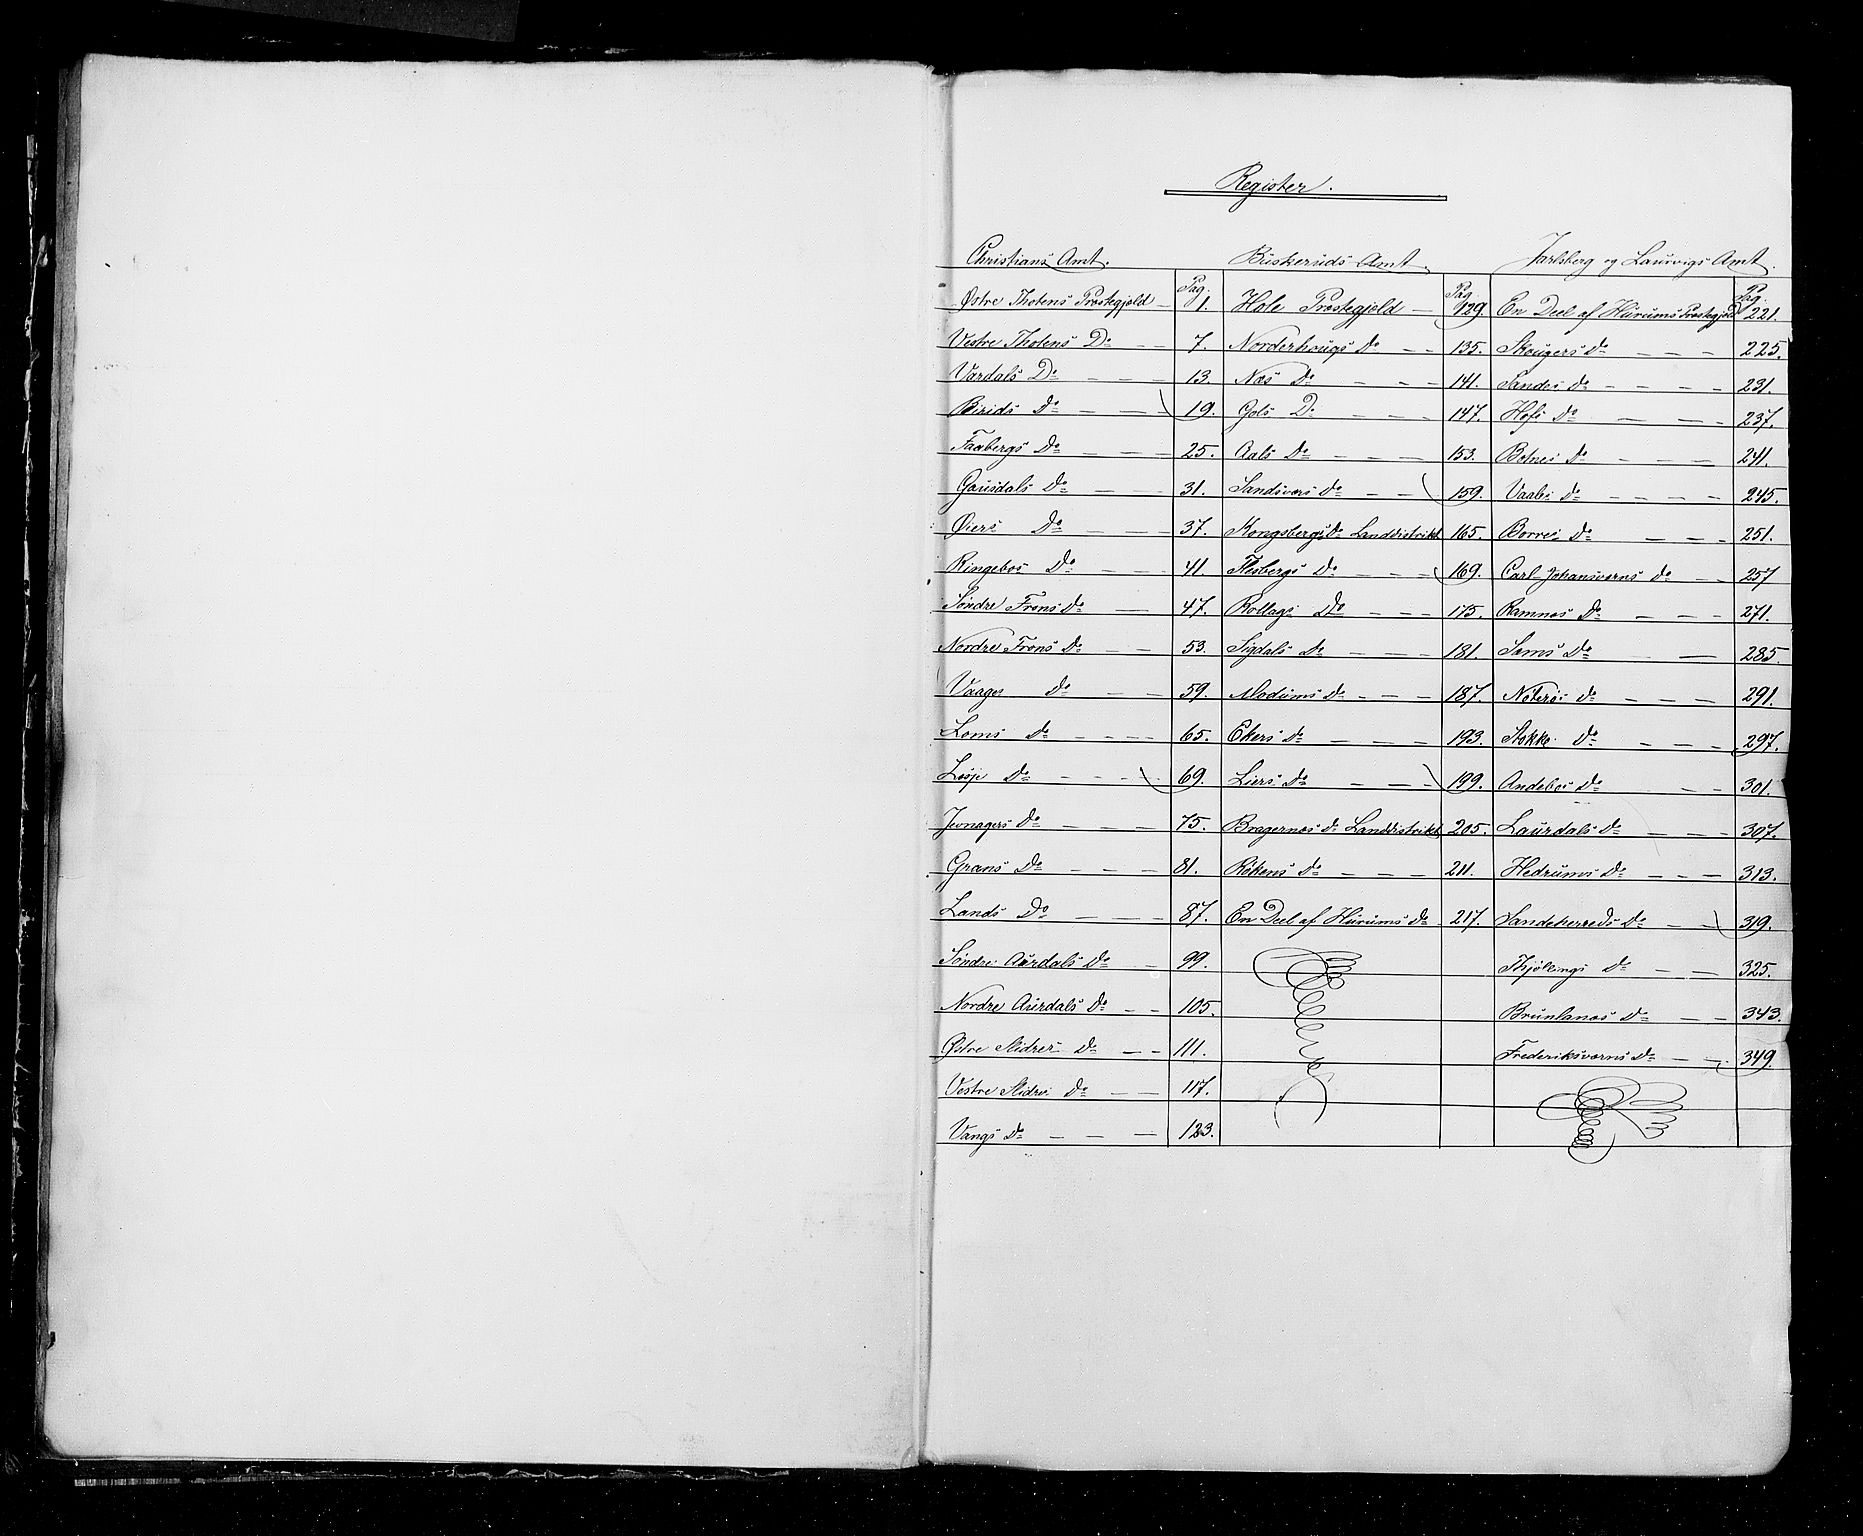 RA, Census 1855, vol. 2: Kristians amt, Buskerud amt og Jarlsberg og Larvik amt, 1855